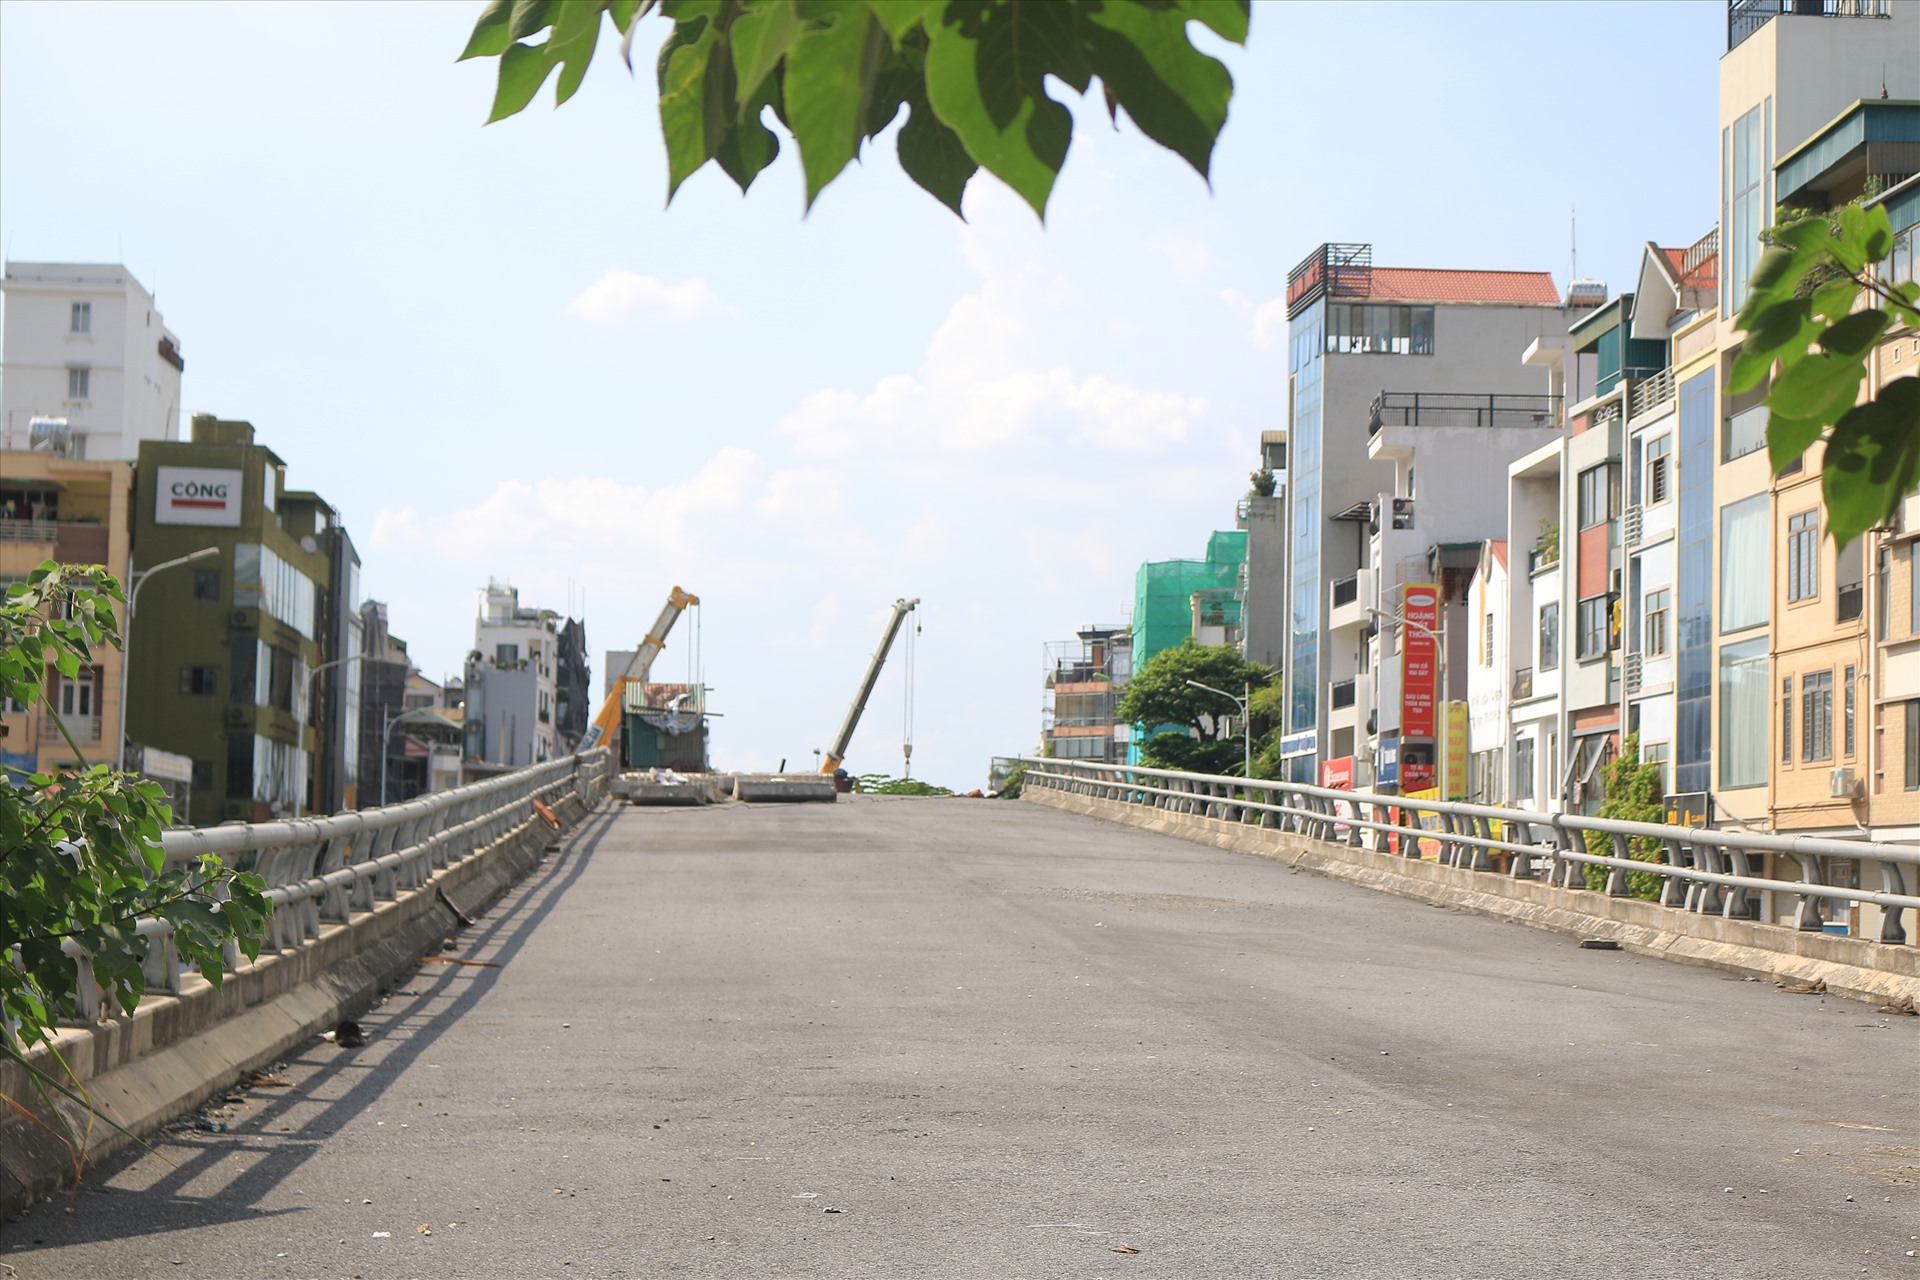 Đến hiện tại, phần đường dẫn lên cầu vượt phía phố Hồng Tiến về cơ bản đã cơ bản hoàn thành. Khu vực này hiện đang được quây rào tôn. 